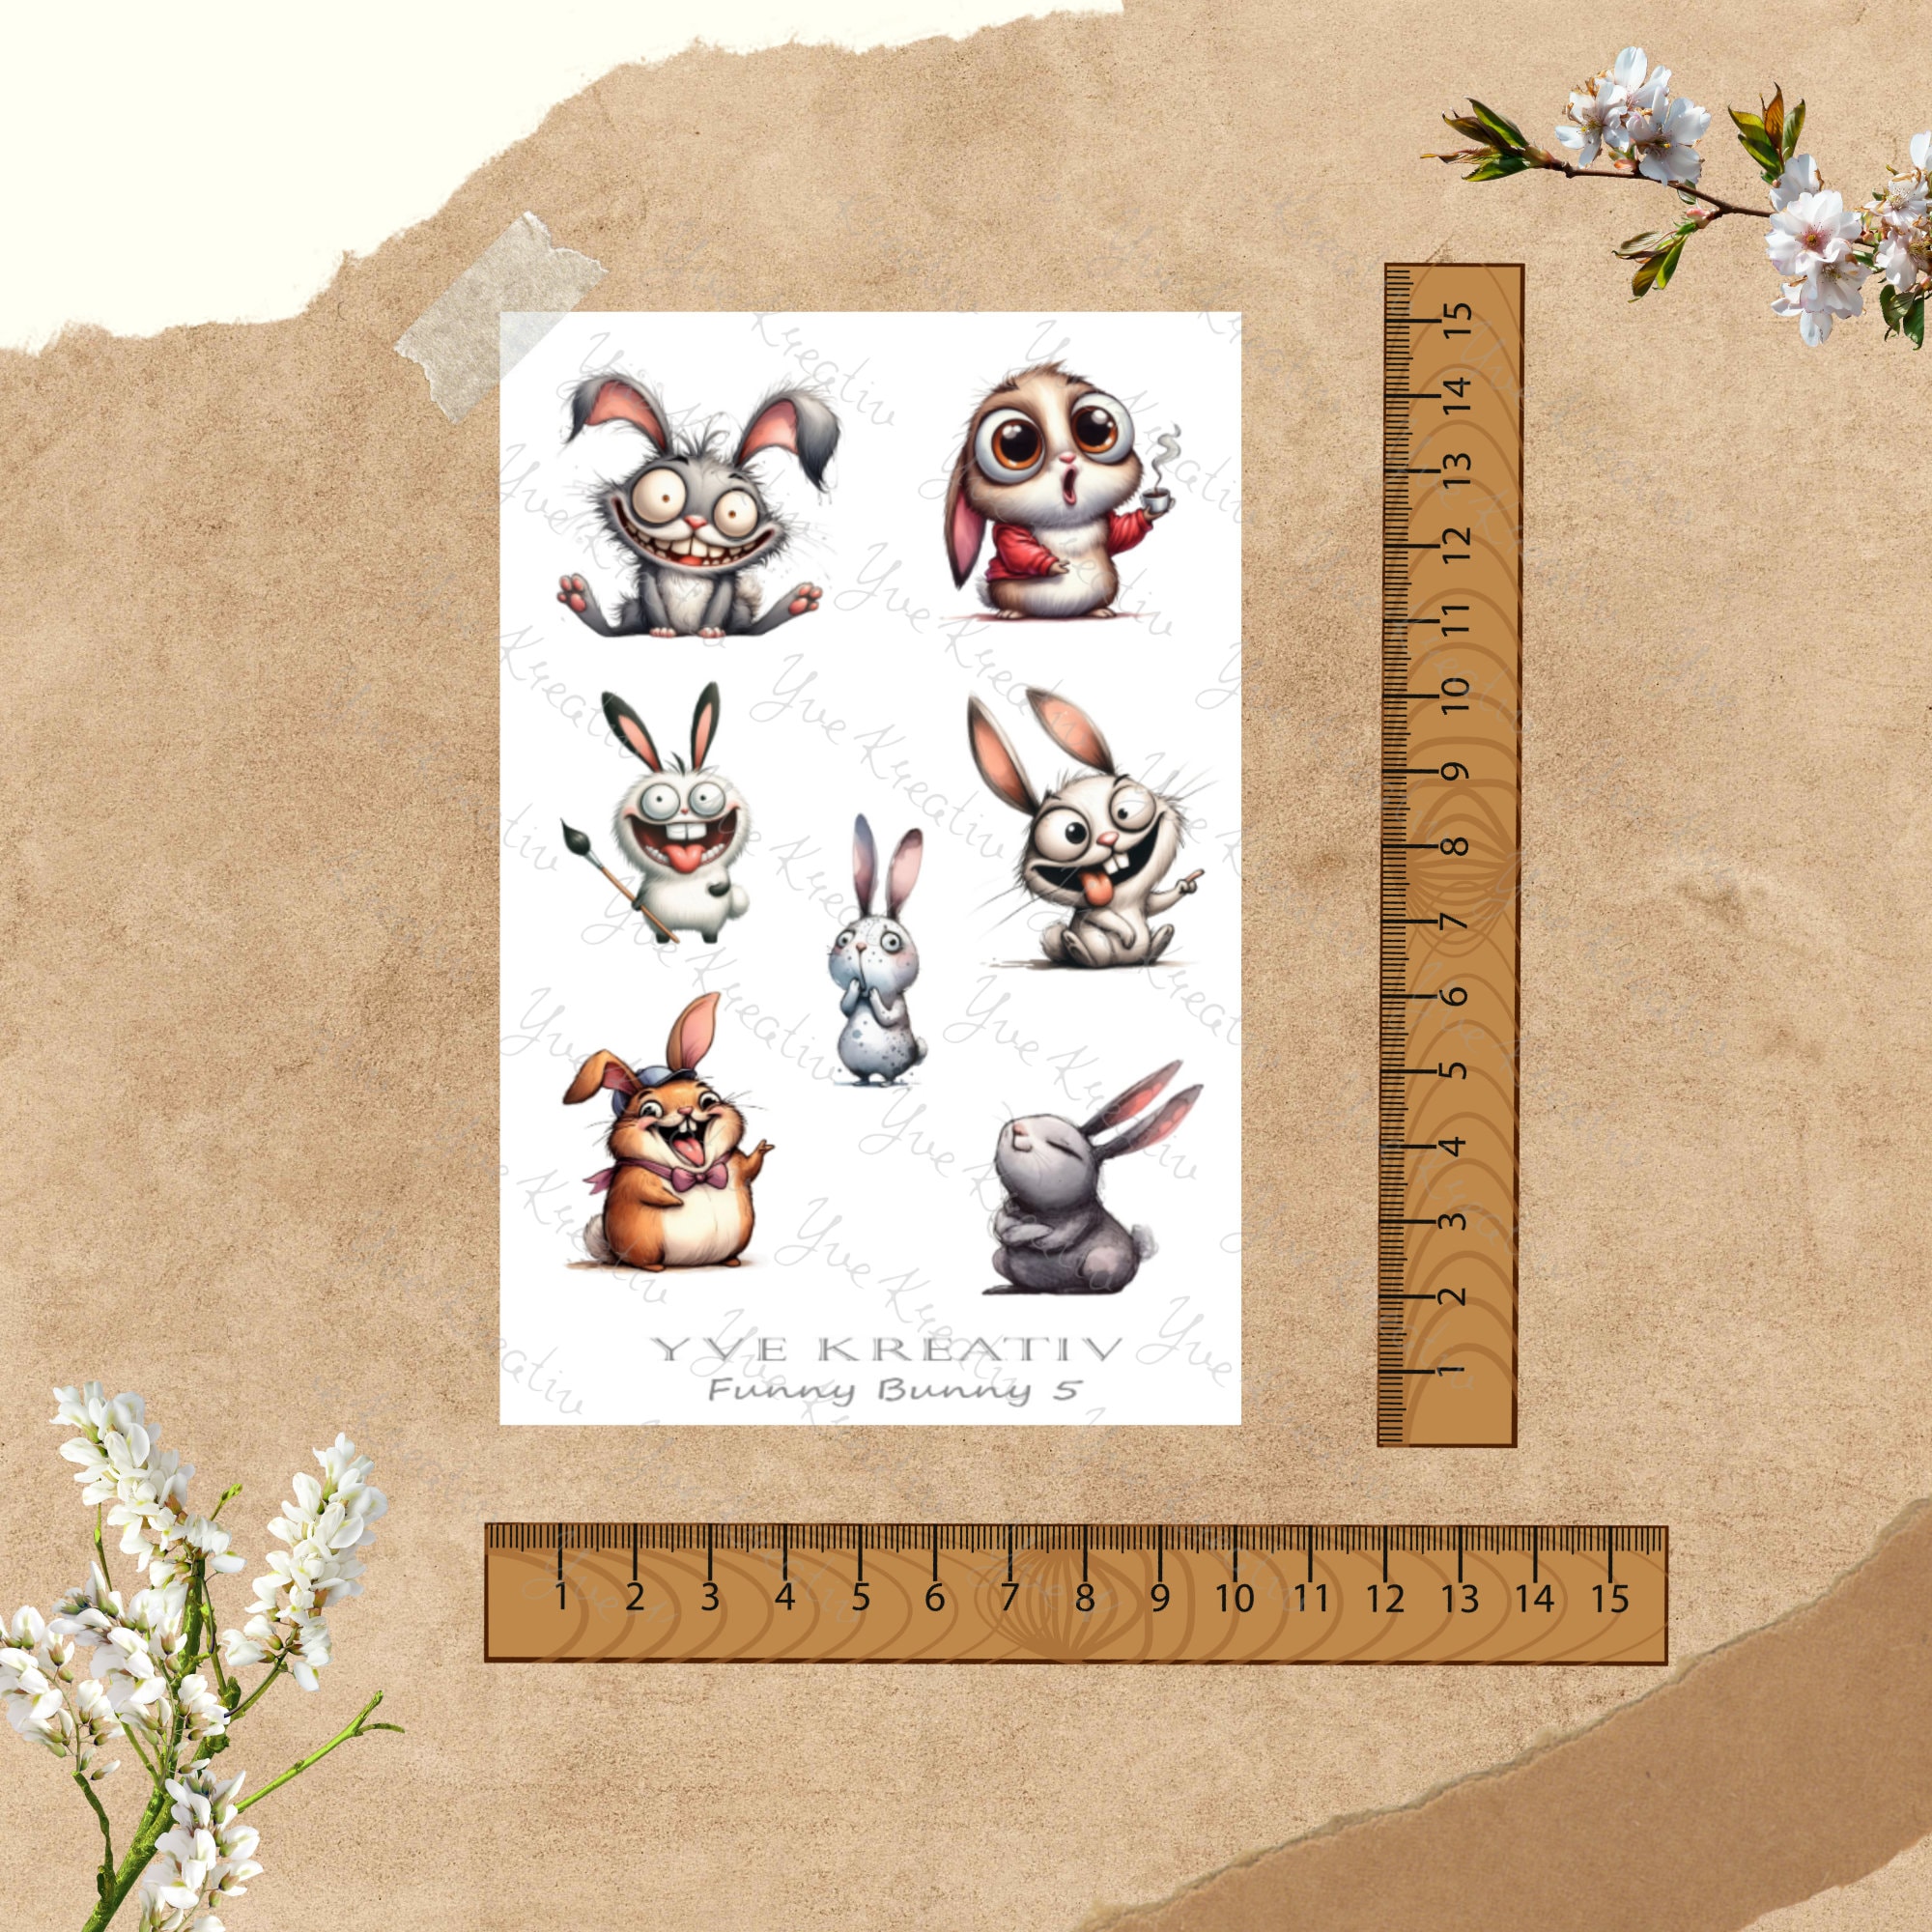 Sticker Bogen - "Funny Bunny" Häschen | Sticker Set - Journal Sticker - Aufkleber 3 Stickerbogen zur Auswahl in Weiß oder Transparent